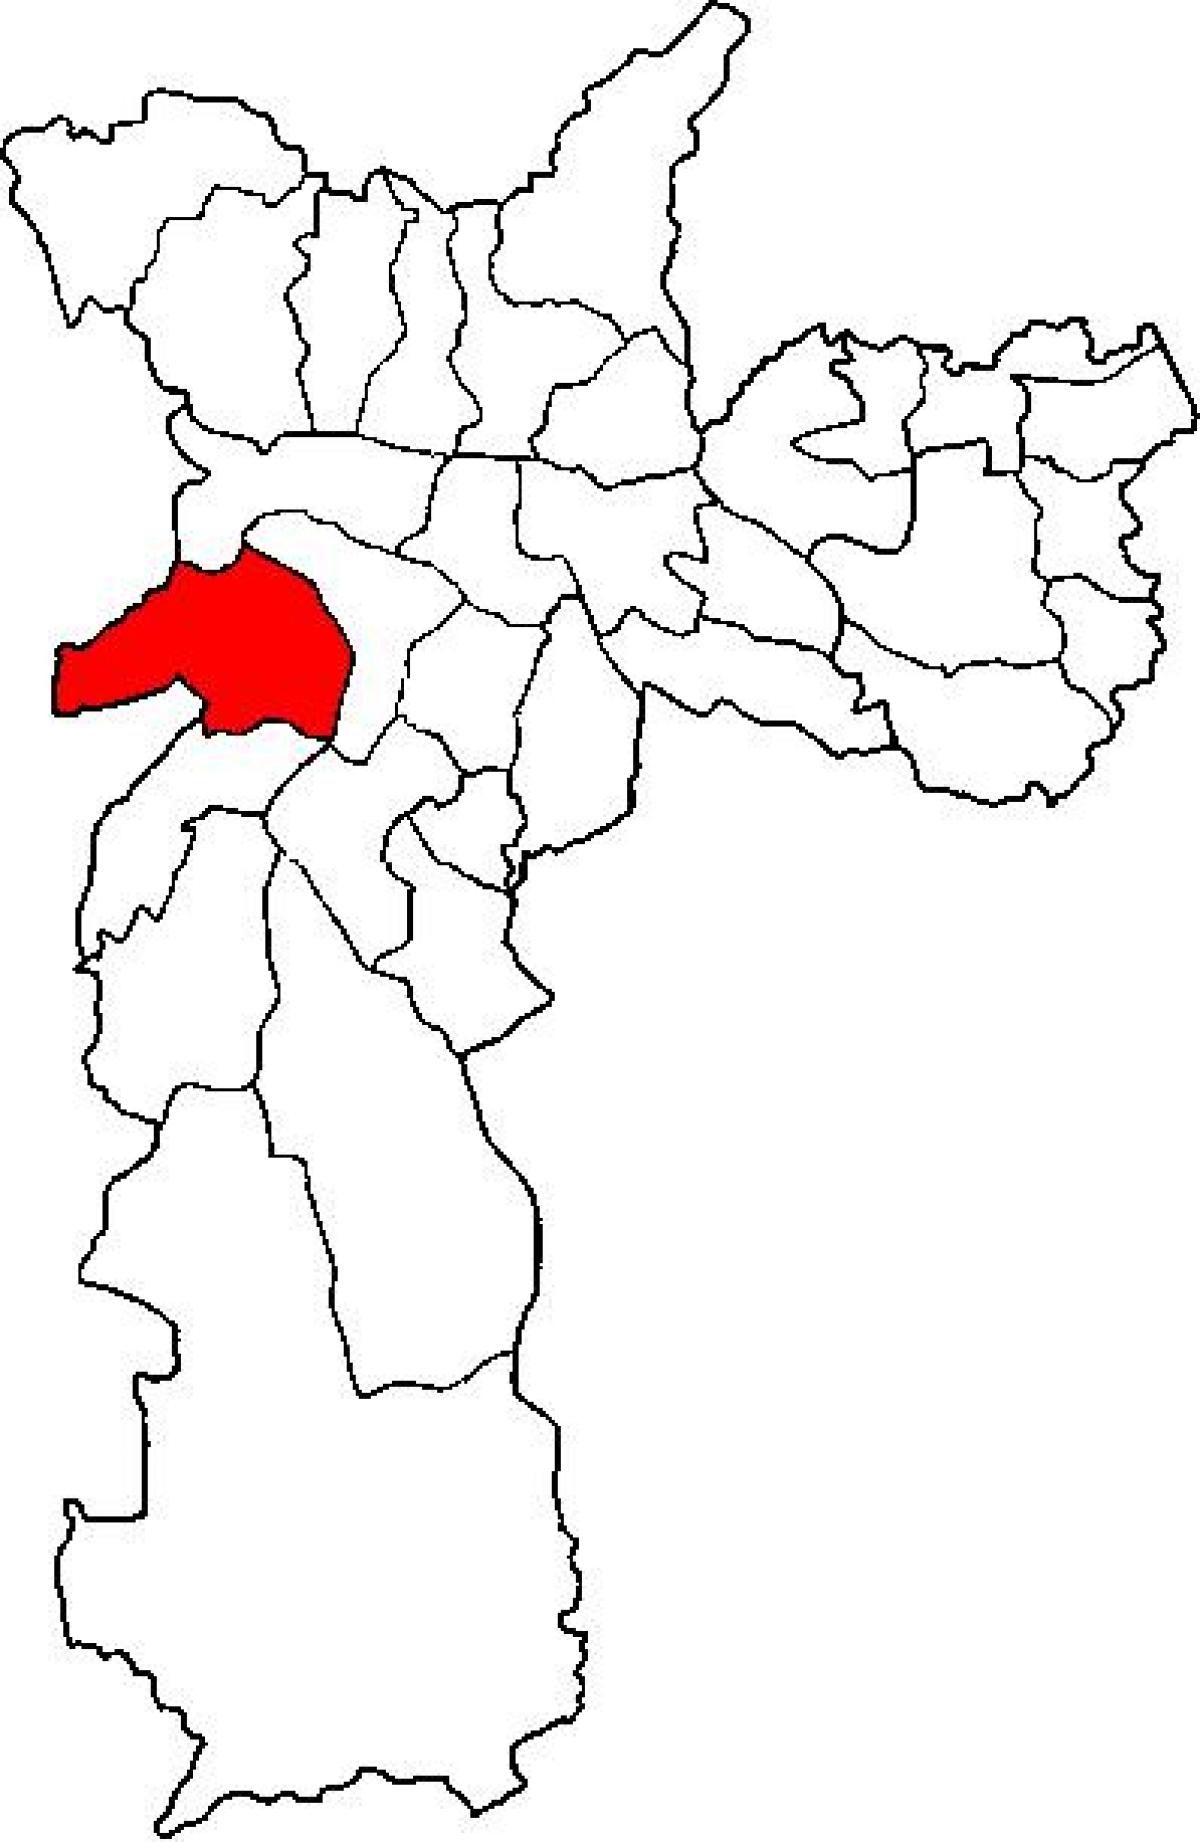 แผนที่ของ Butantã รายการย่อยขอ prefecture São Paulo